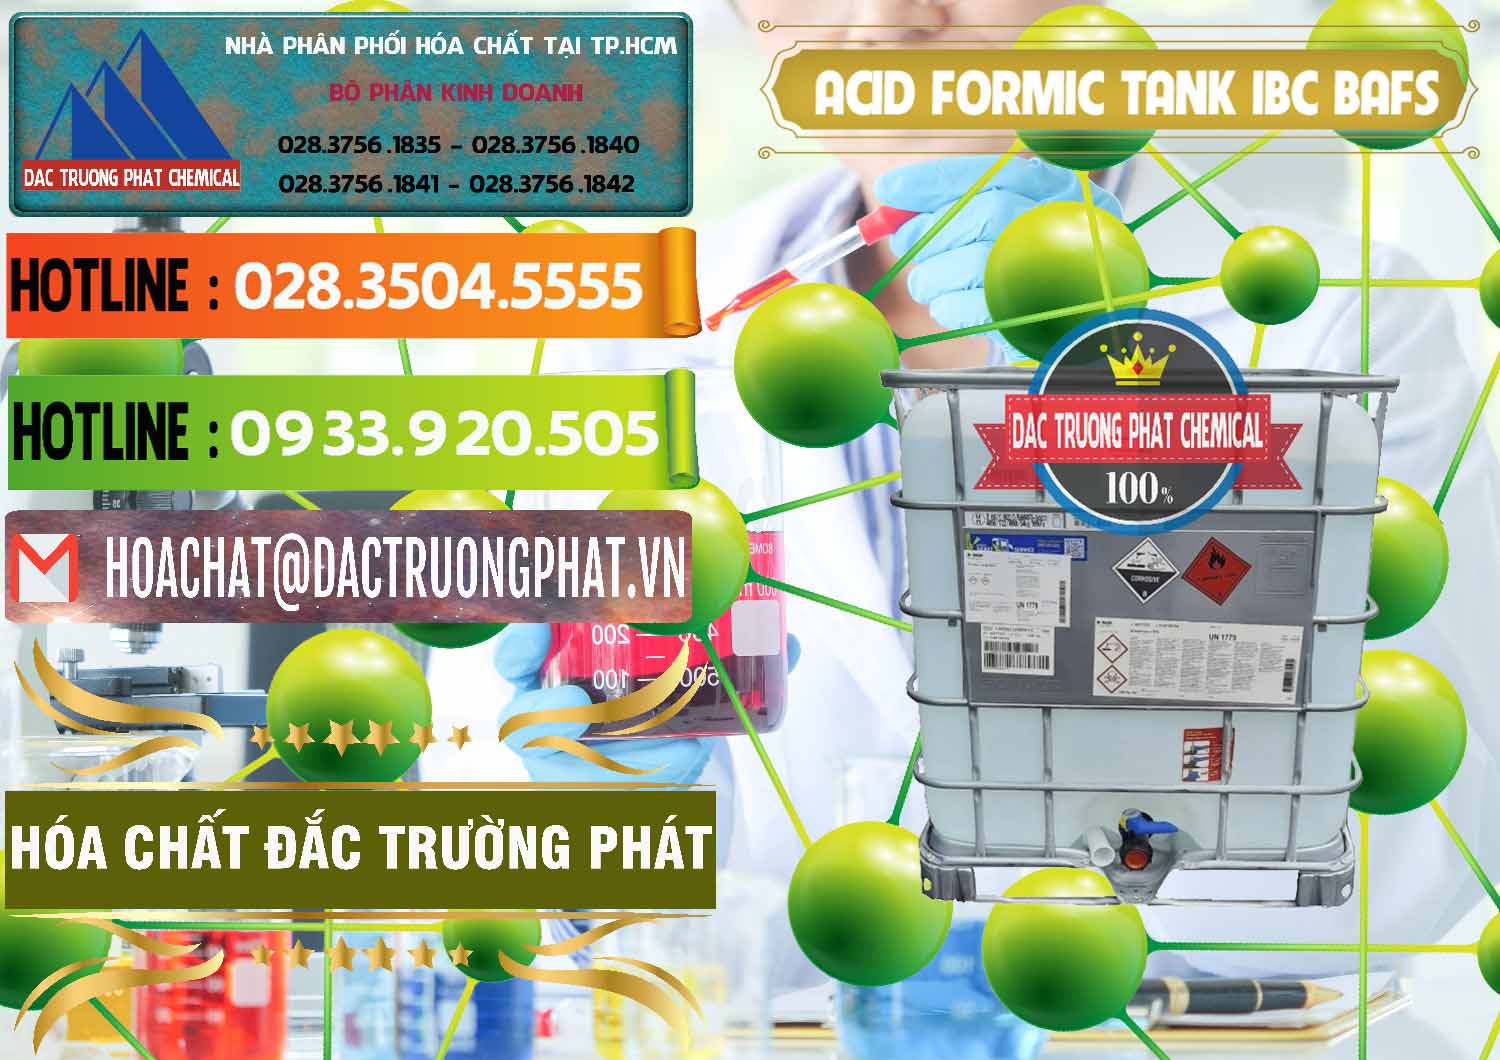 Chuyên bán và cung cấp Acid Formic - Axit Formic Tank - Bồn IBC BASF Đức - 0366 - Cty chuyên bán _ cung cấp hóa chất tại TP.HCM - cungcaphoachat.com.vn